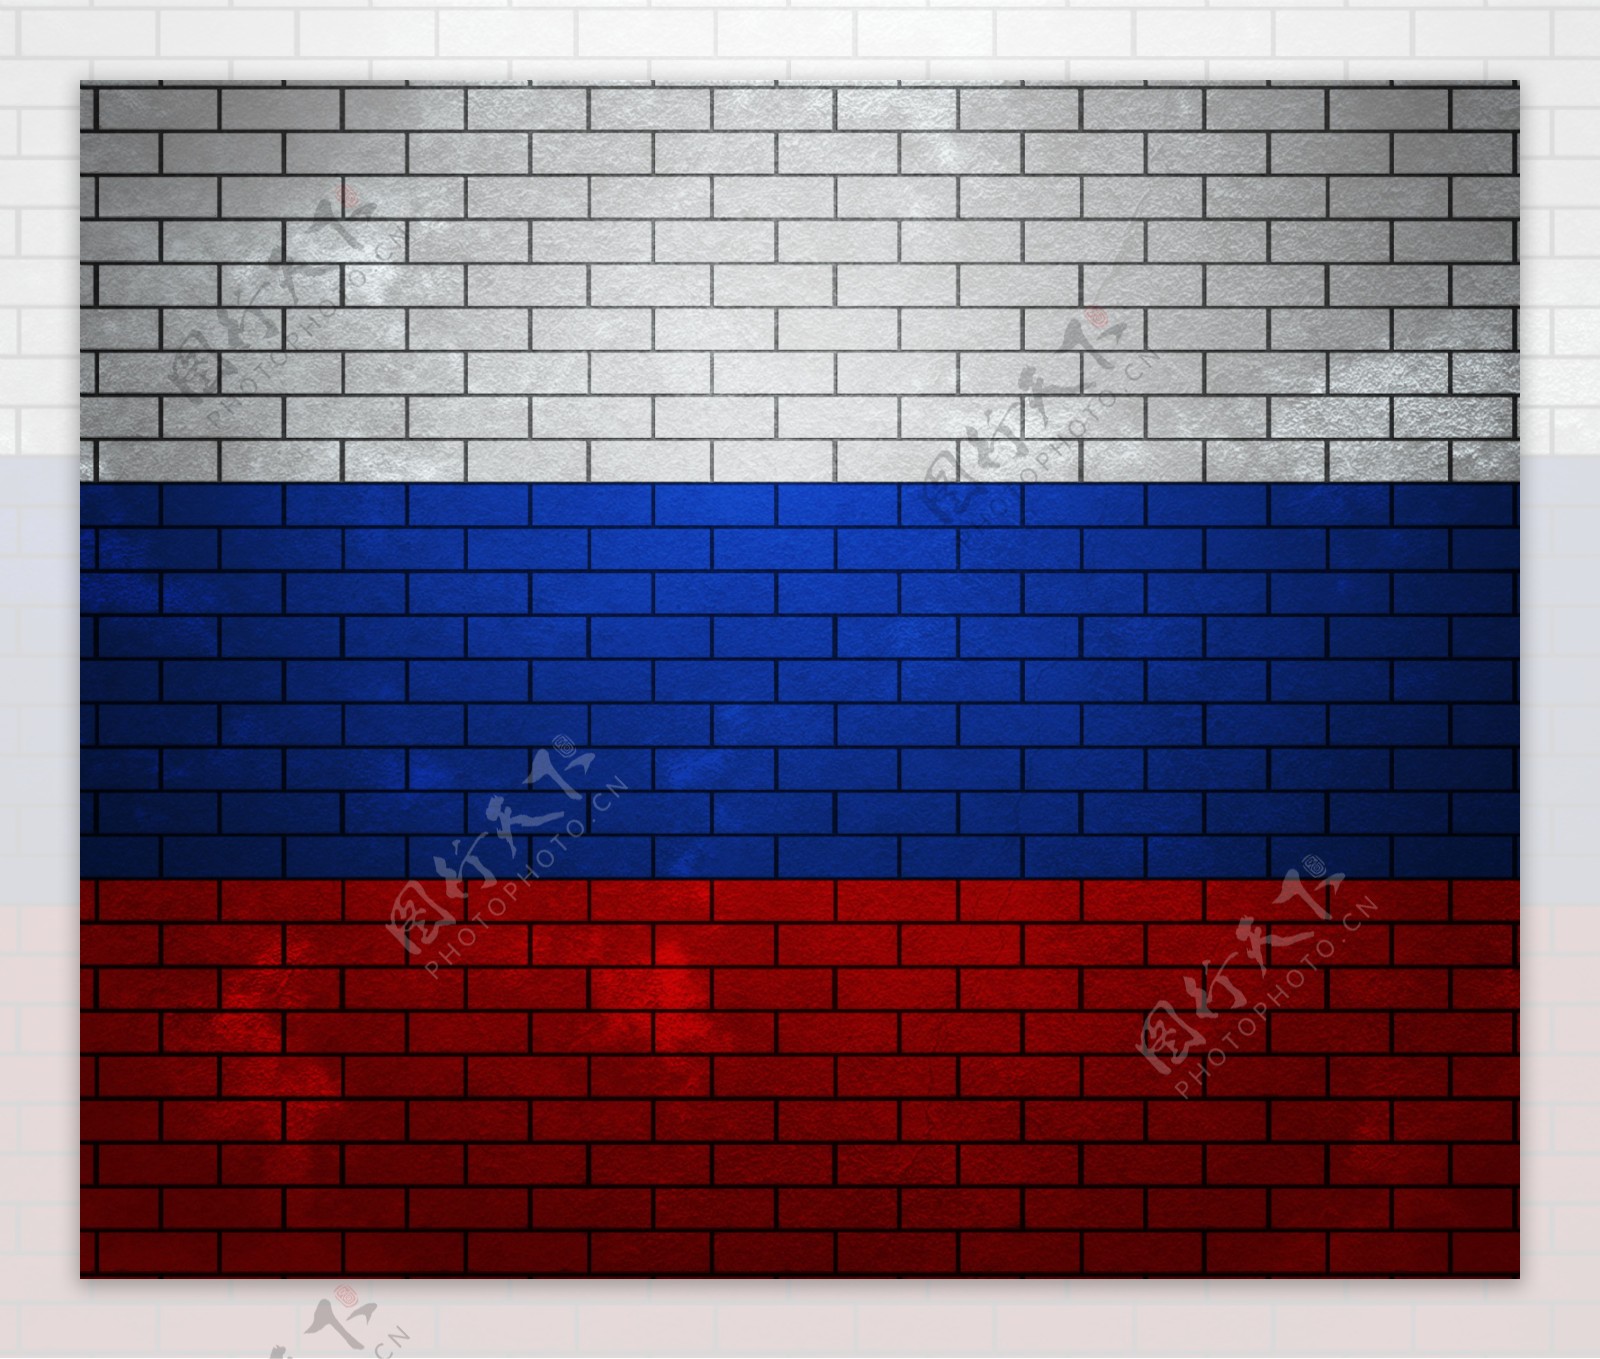 俄罗斯在砖墙上的旗帜